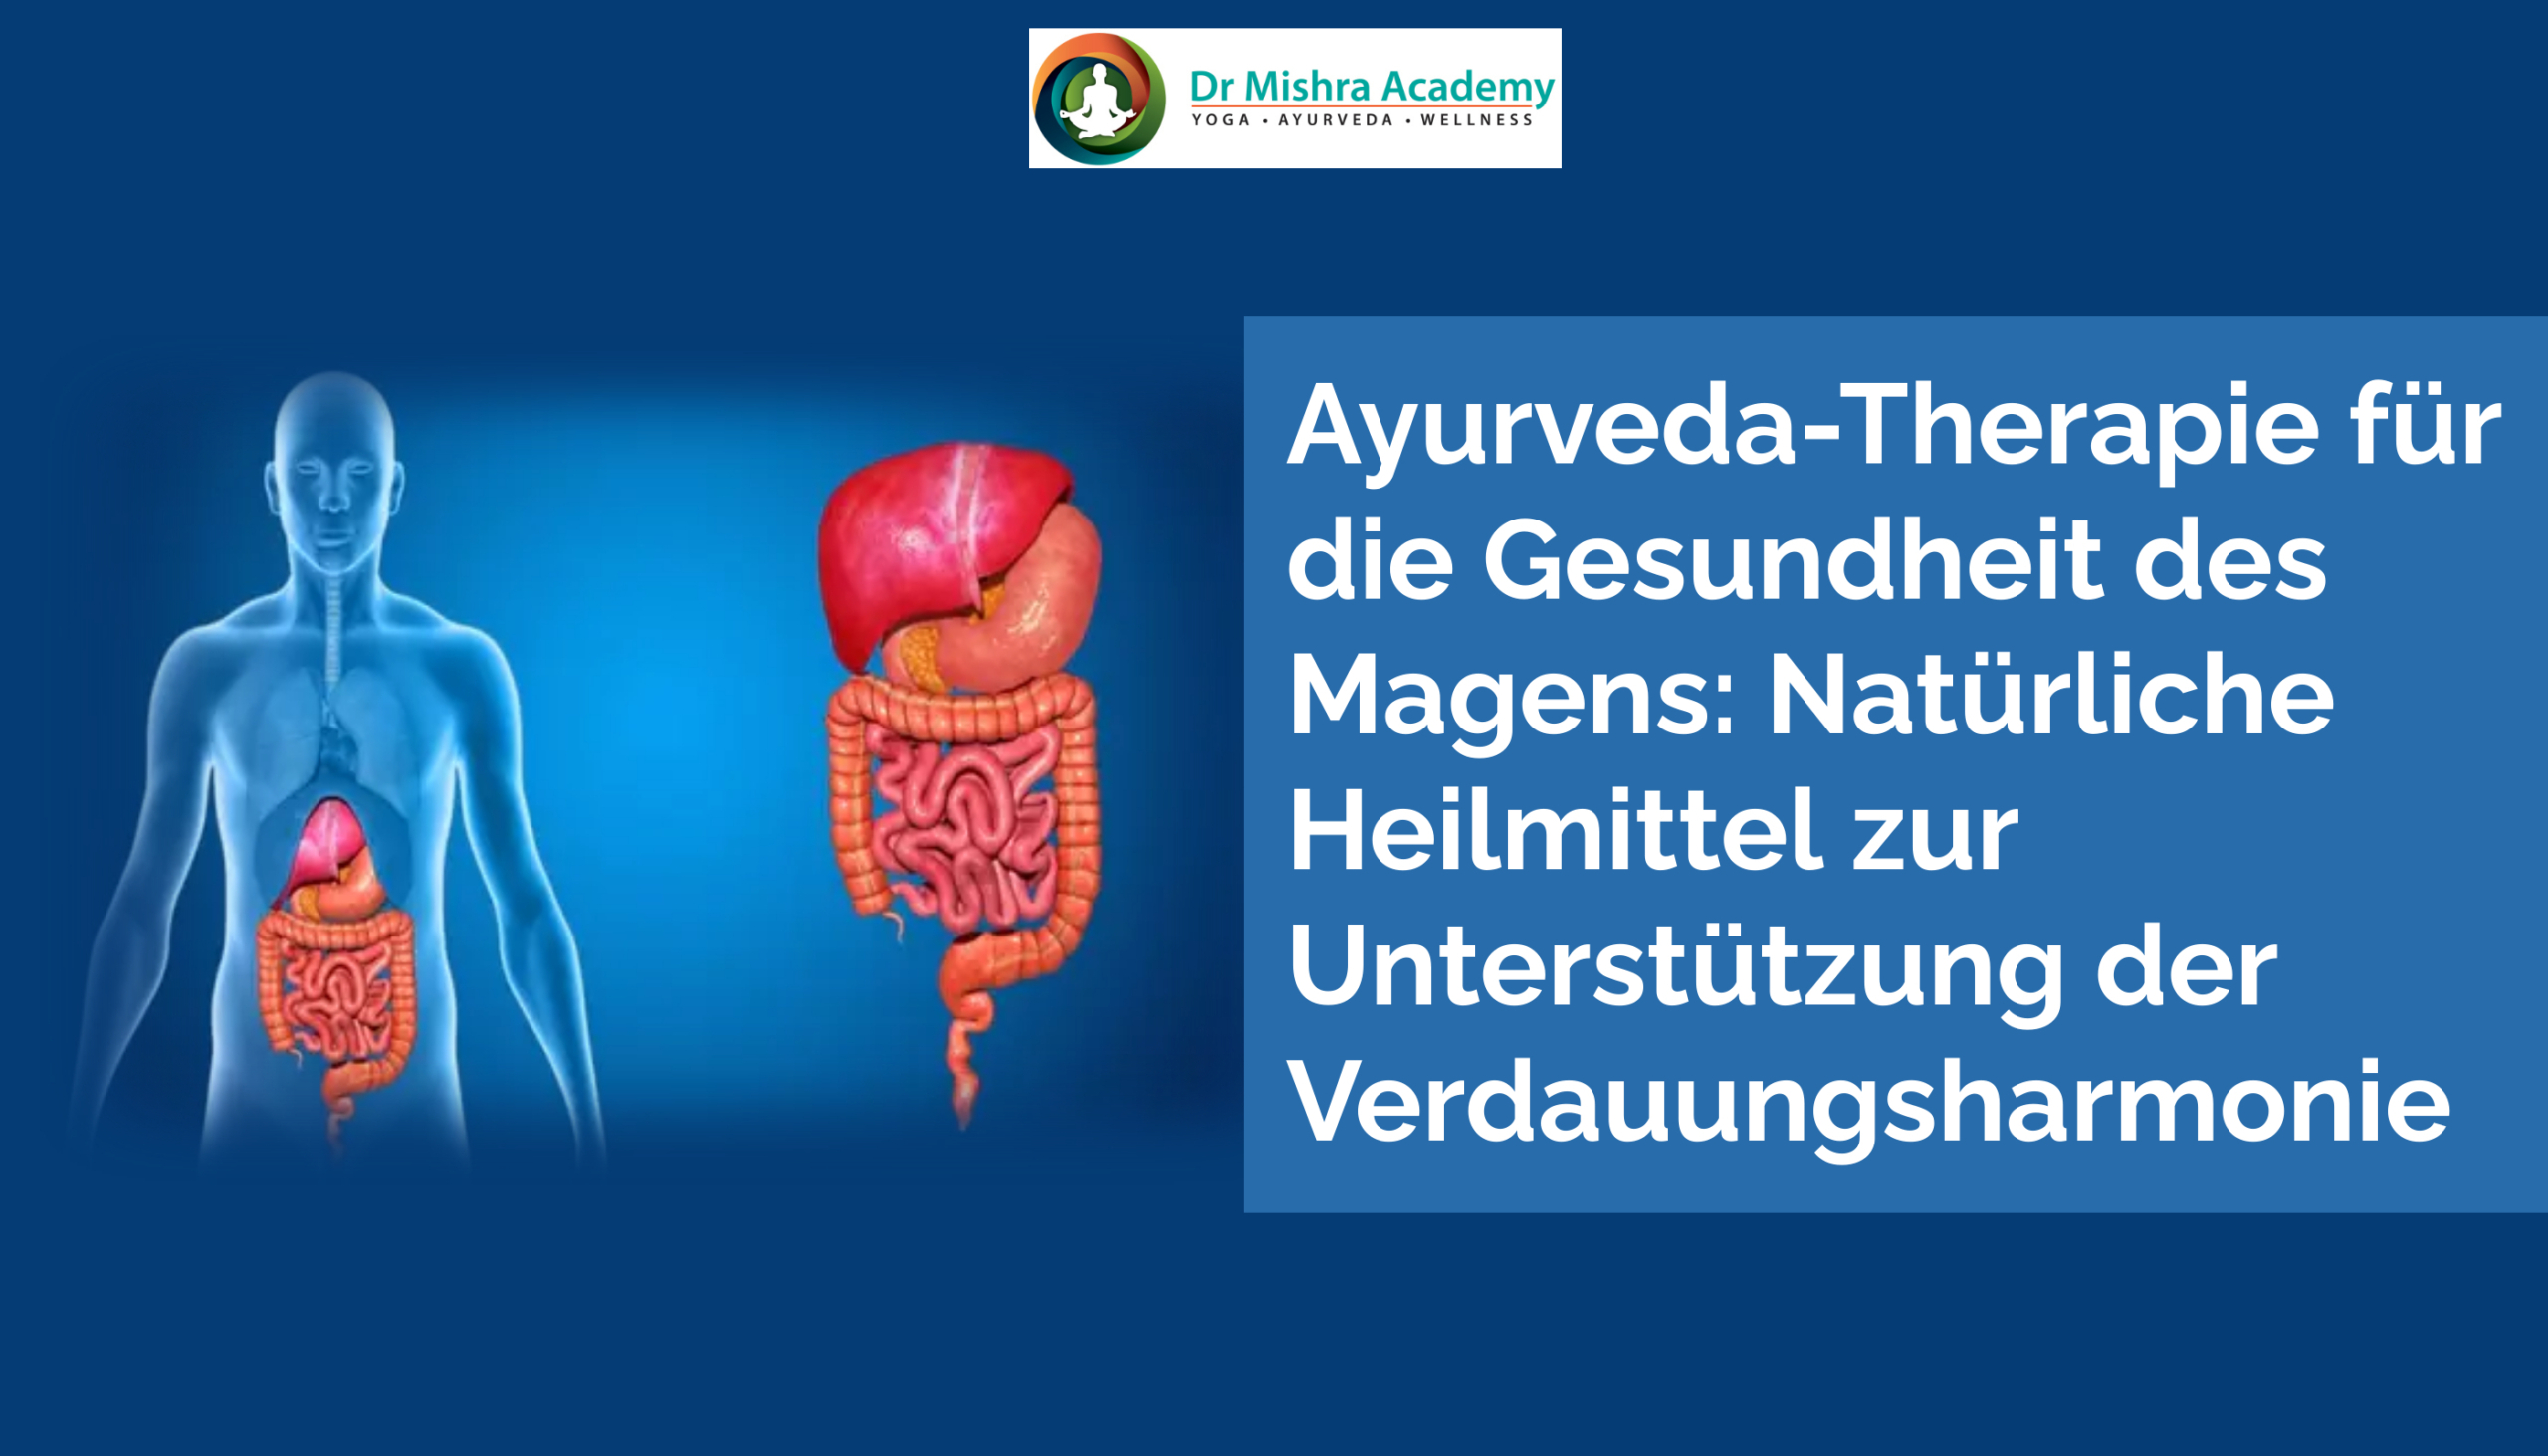 Ayurveda-Therapie für die Gesundheit des Magens: Natürliche Heilmittel zur Unterstützung der Verdauungsharmonie